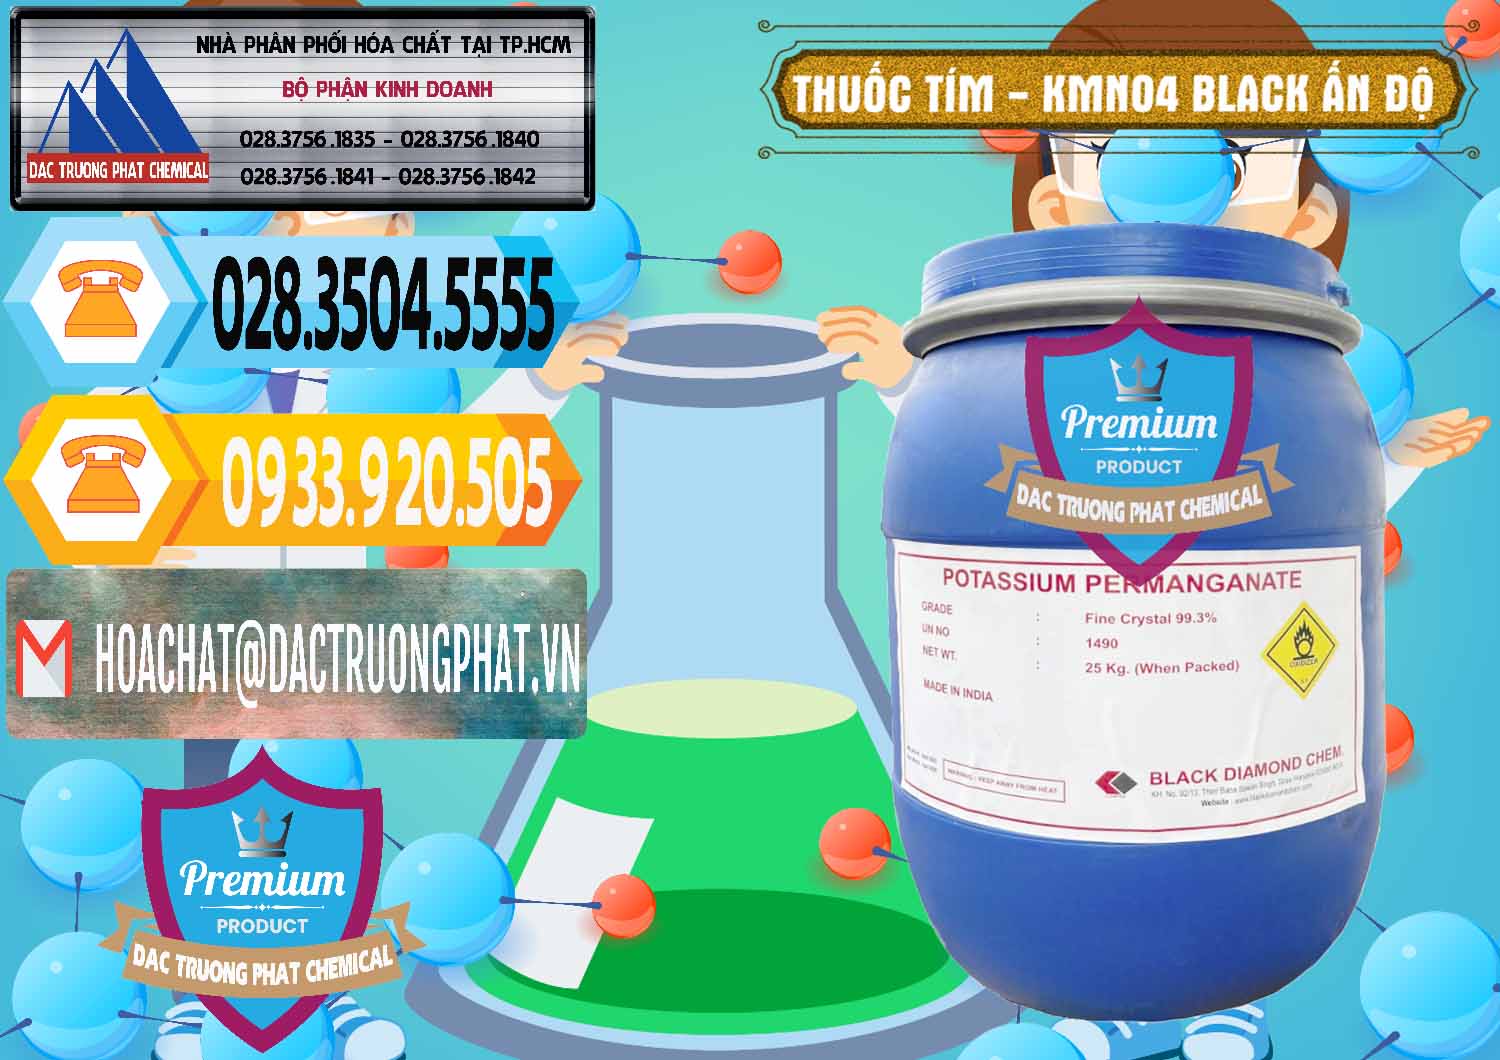 Công ty chuyên cung cấp - bán Thuốc Tím - KMNO4 Black Diamond Ấn Độ India - 0414 - Nhà nhập khẩu và cung cấp hóa chất tại TP.HCM - hoachattayrua.net